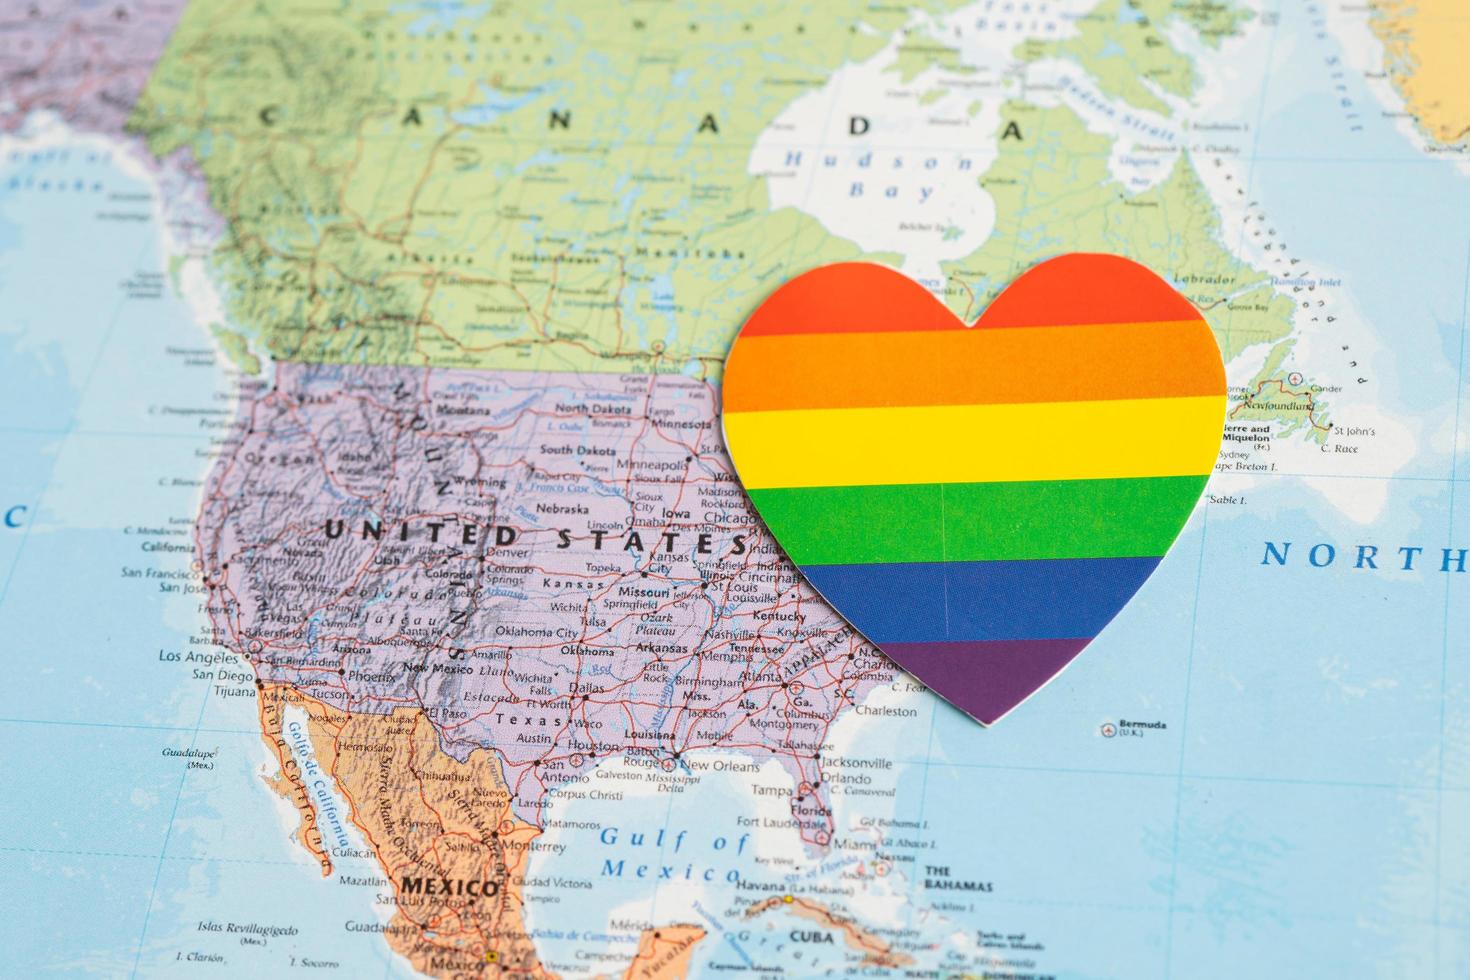 bangkok, tailândia, 1 de junho de 2022, coração de cor do arco-íris no fundo do mapa do mundo dos eua américa, símbolo do mês do orgulho lgbt comemora anual em junho social, símbolo de gay, lésbica, bissexual, transgênero foto